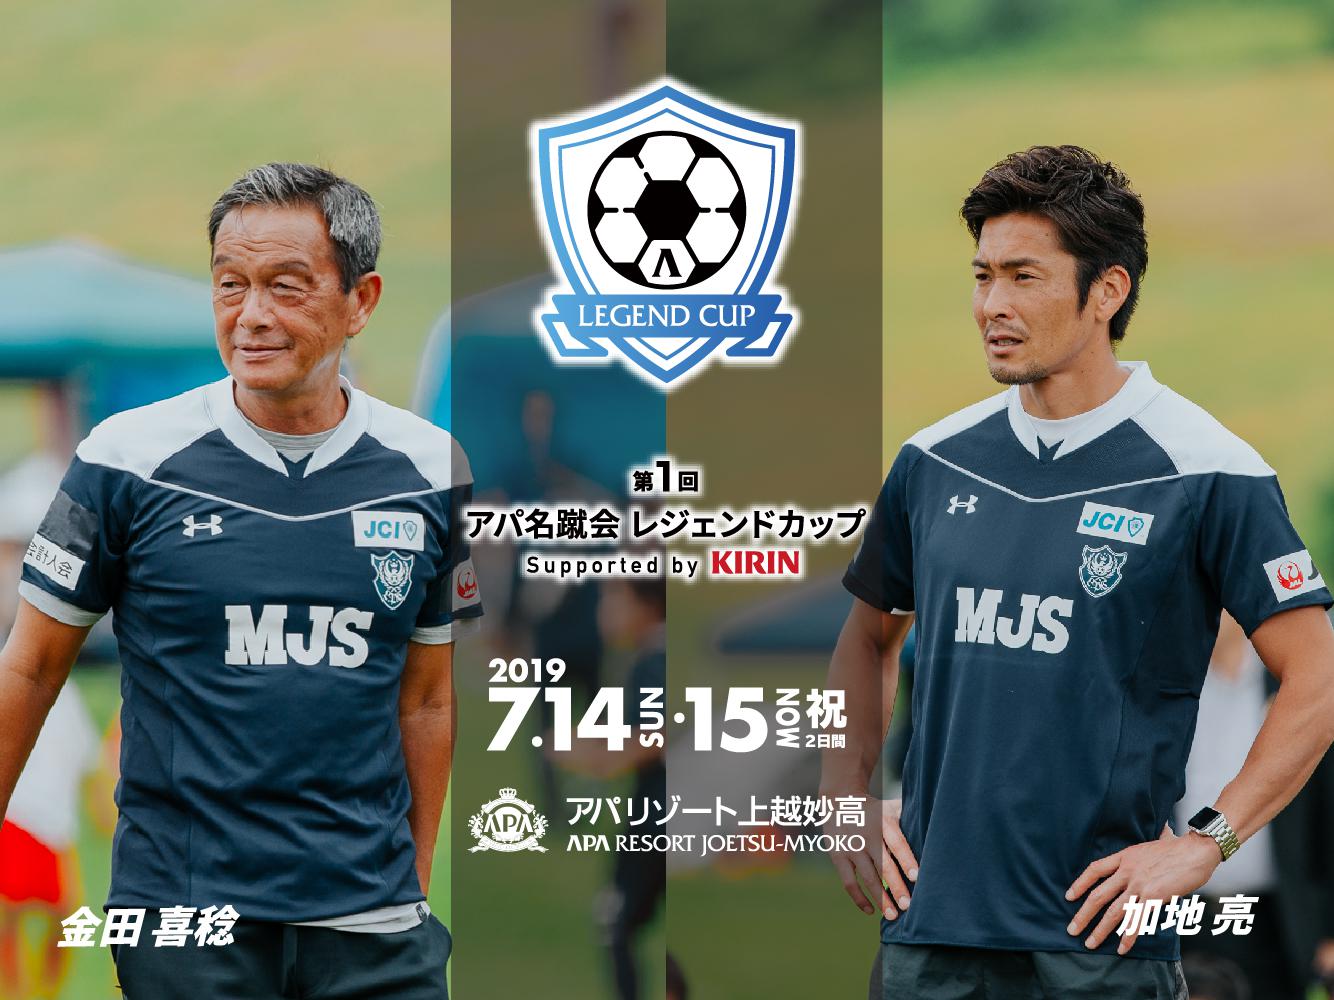 アパ名蹴会レジェンドカップ supported by KIRIN